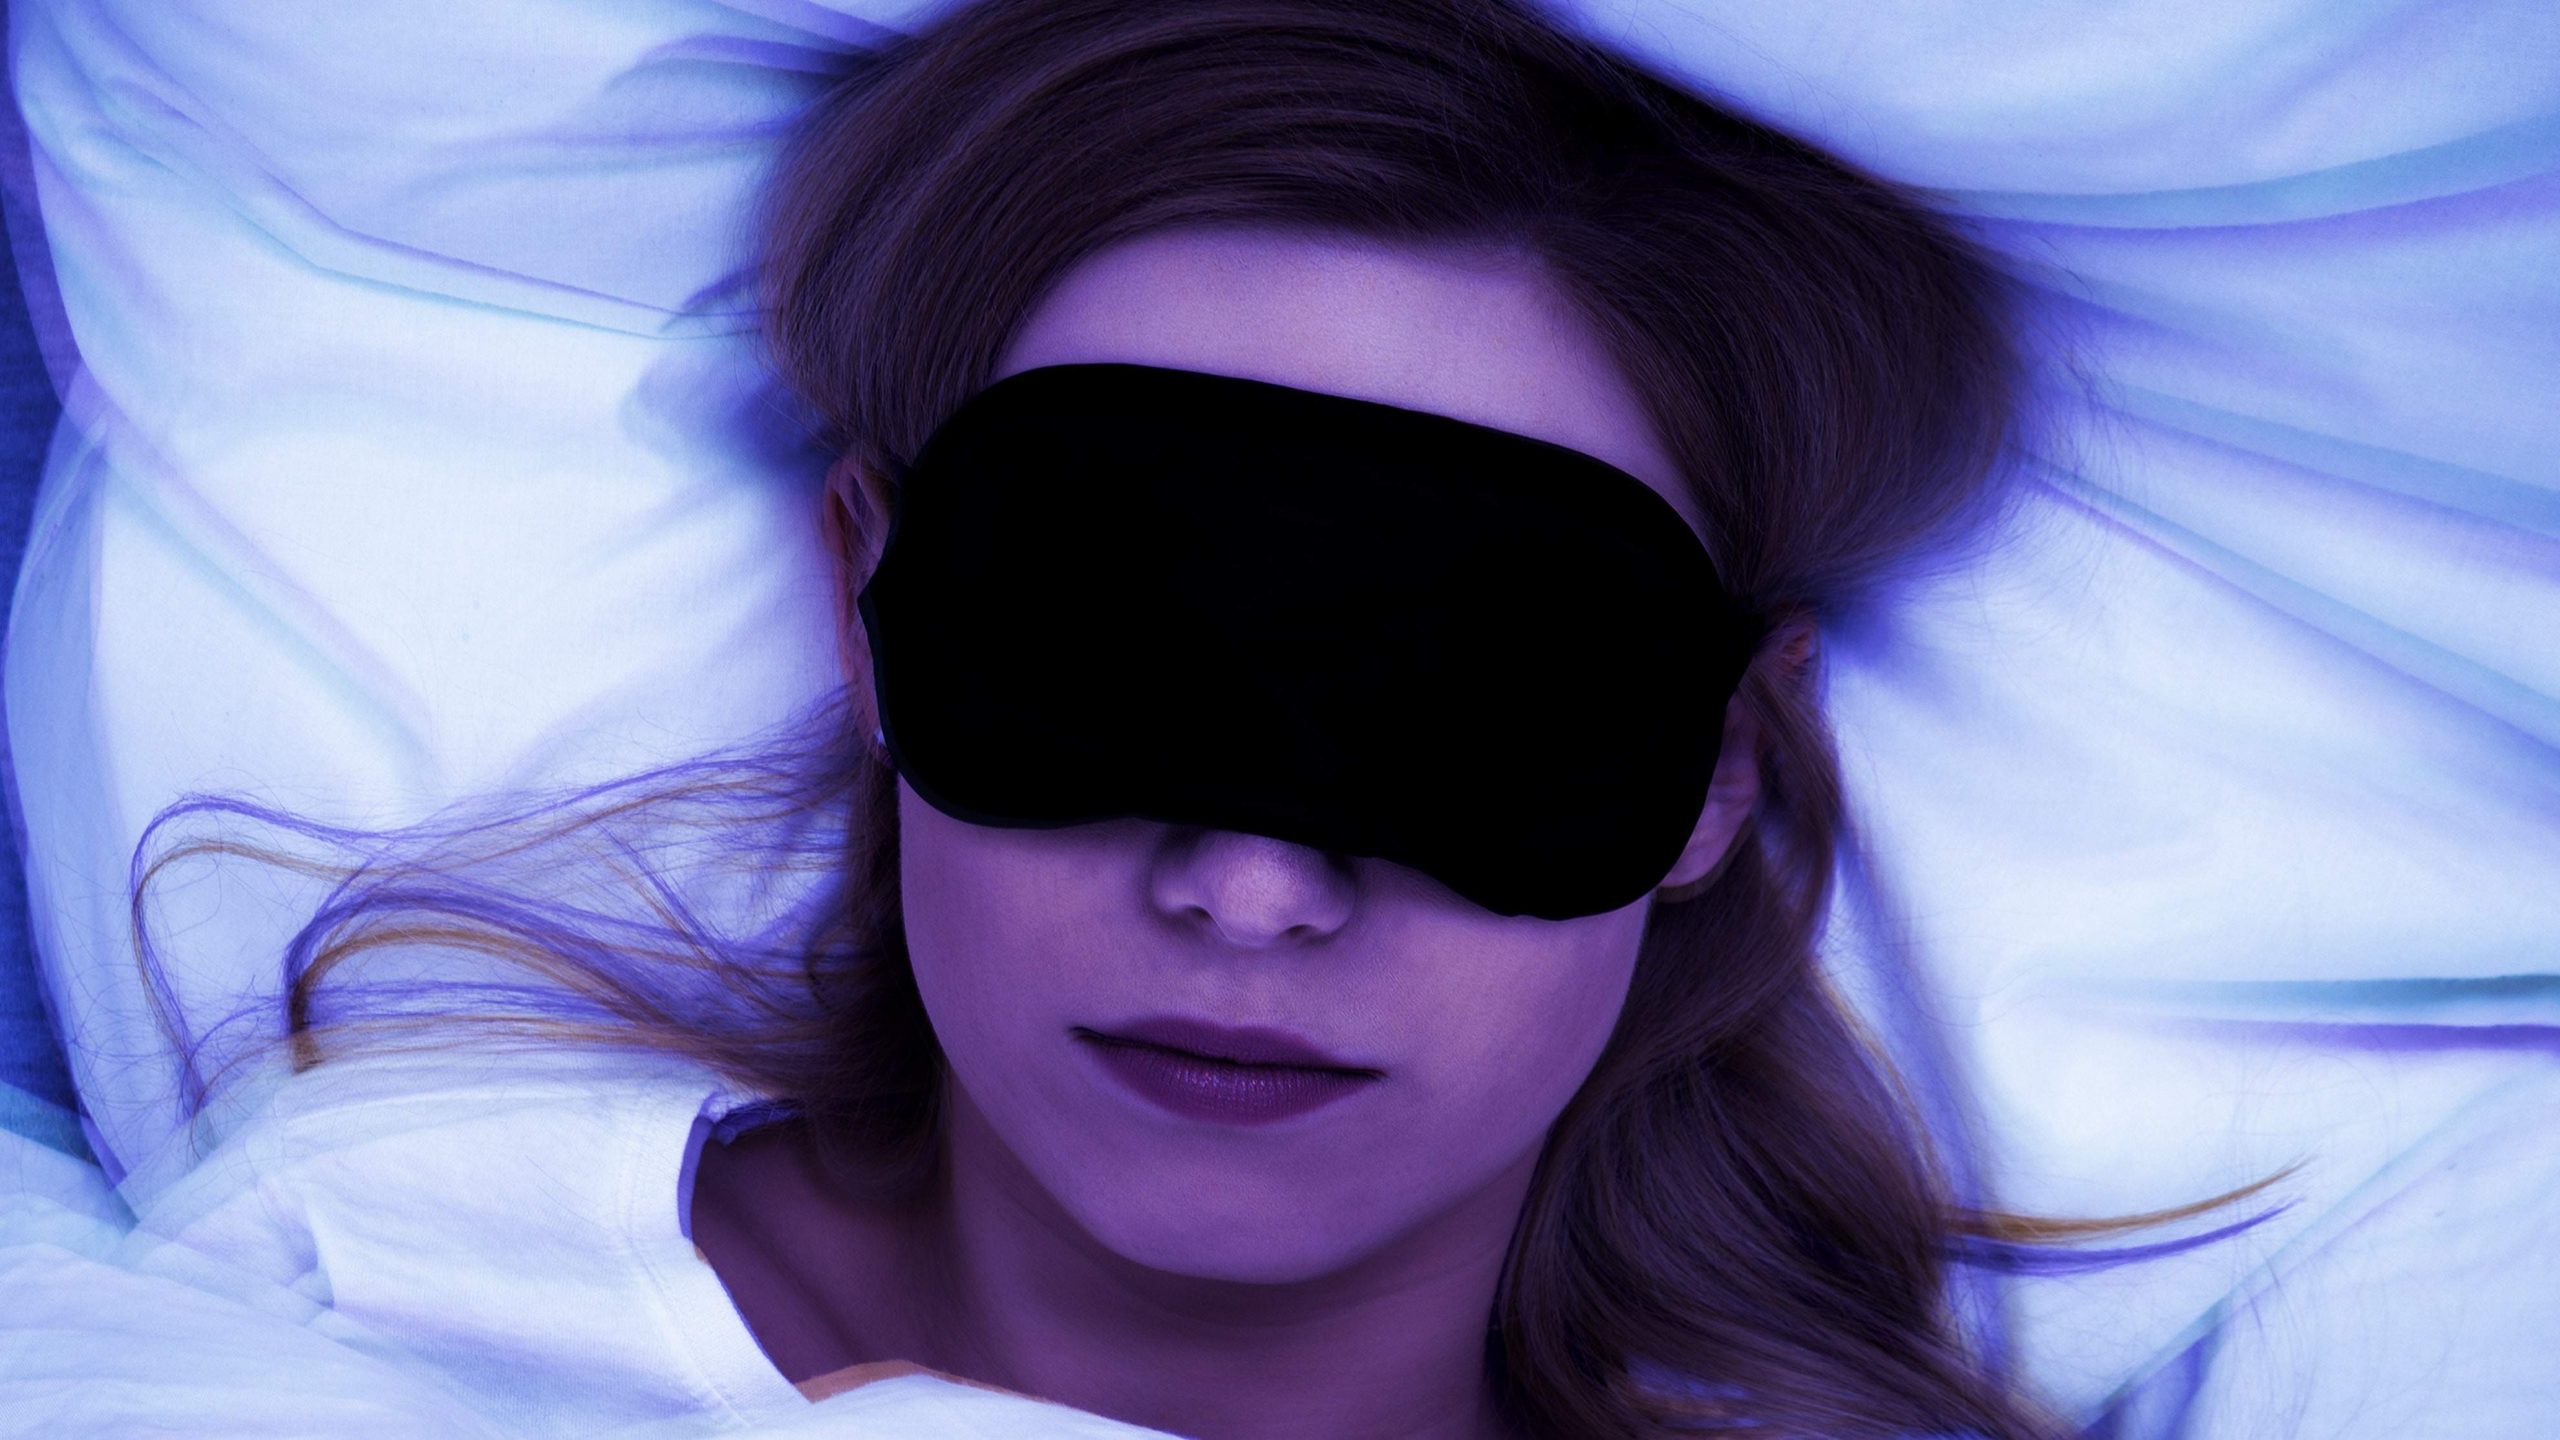 لماذا ينصح بالاعتماد على قناع العين للنوم؟